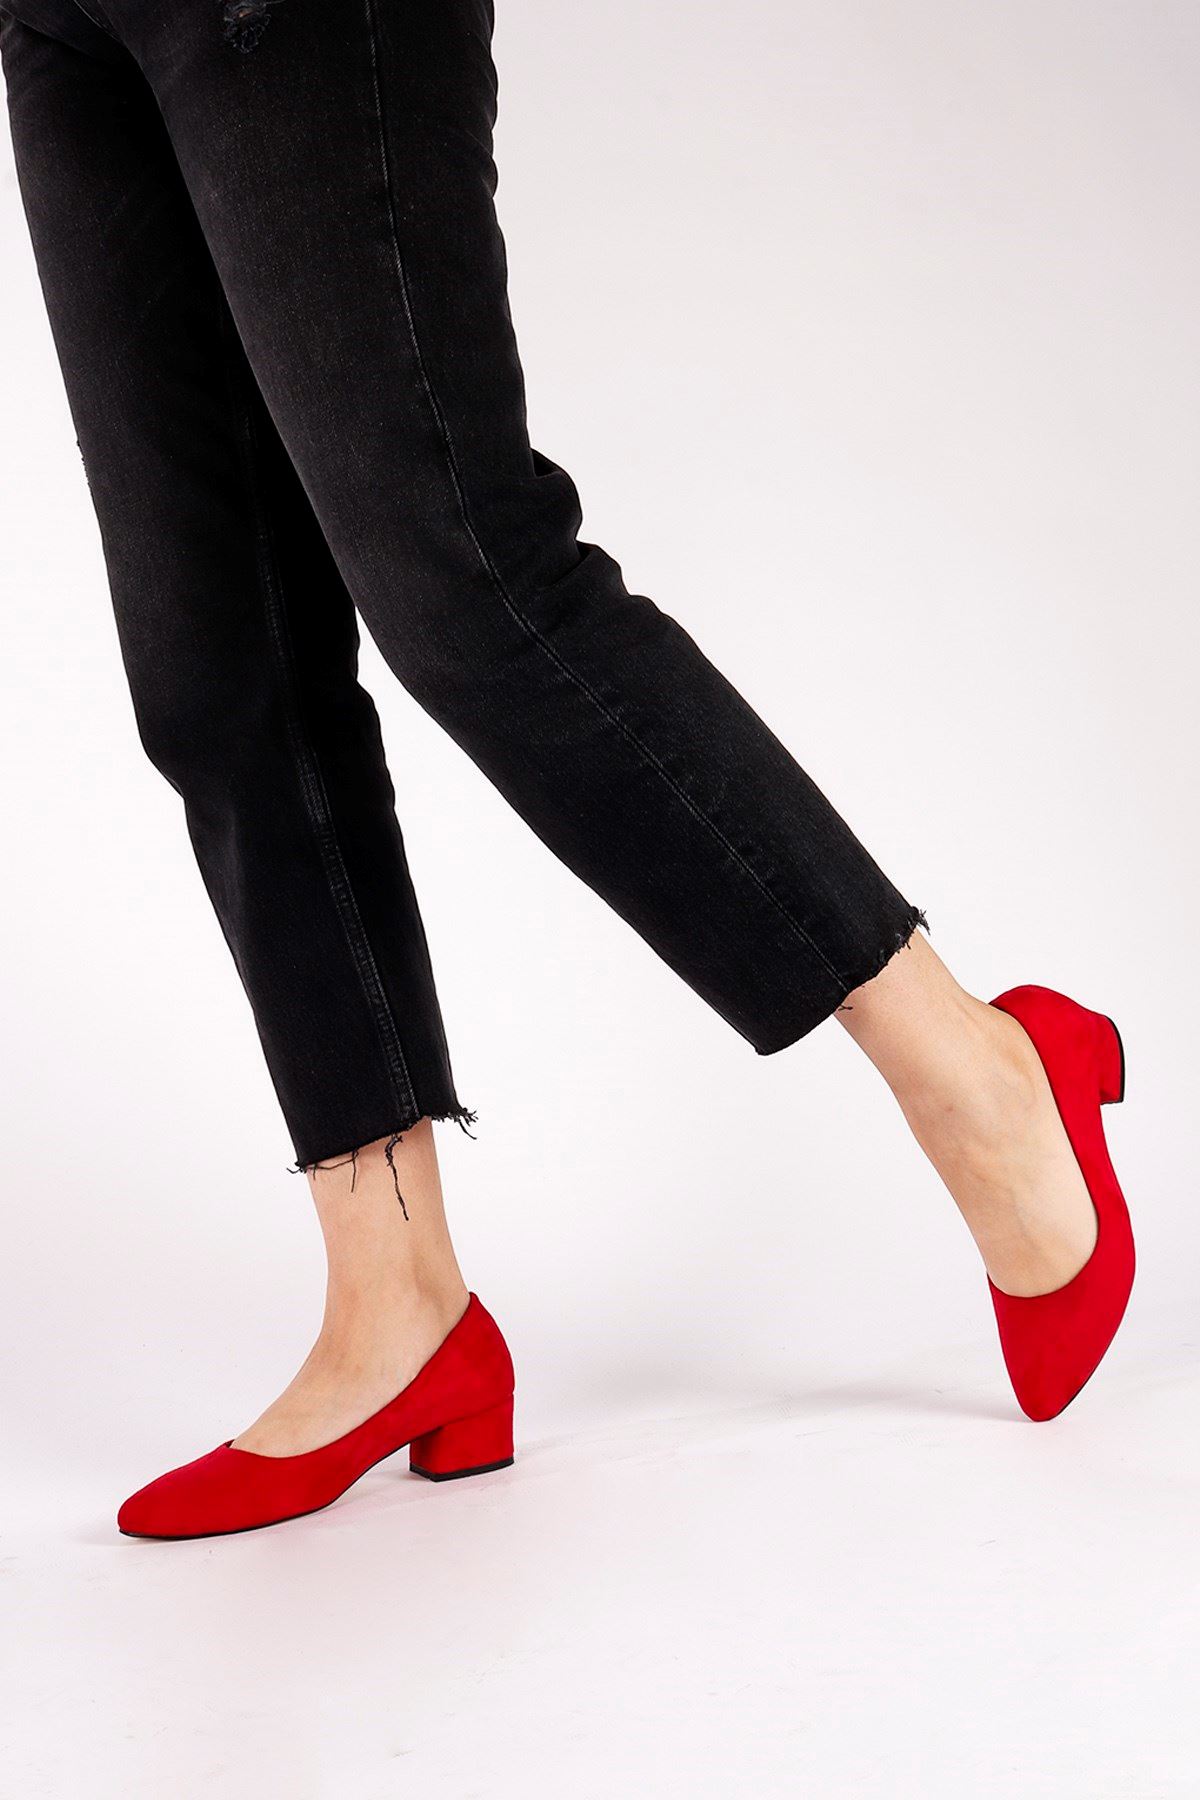 Sandra Kırmızı Süet Topuklu Ayakkabı